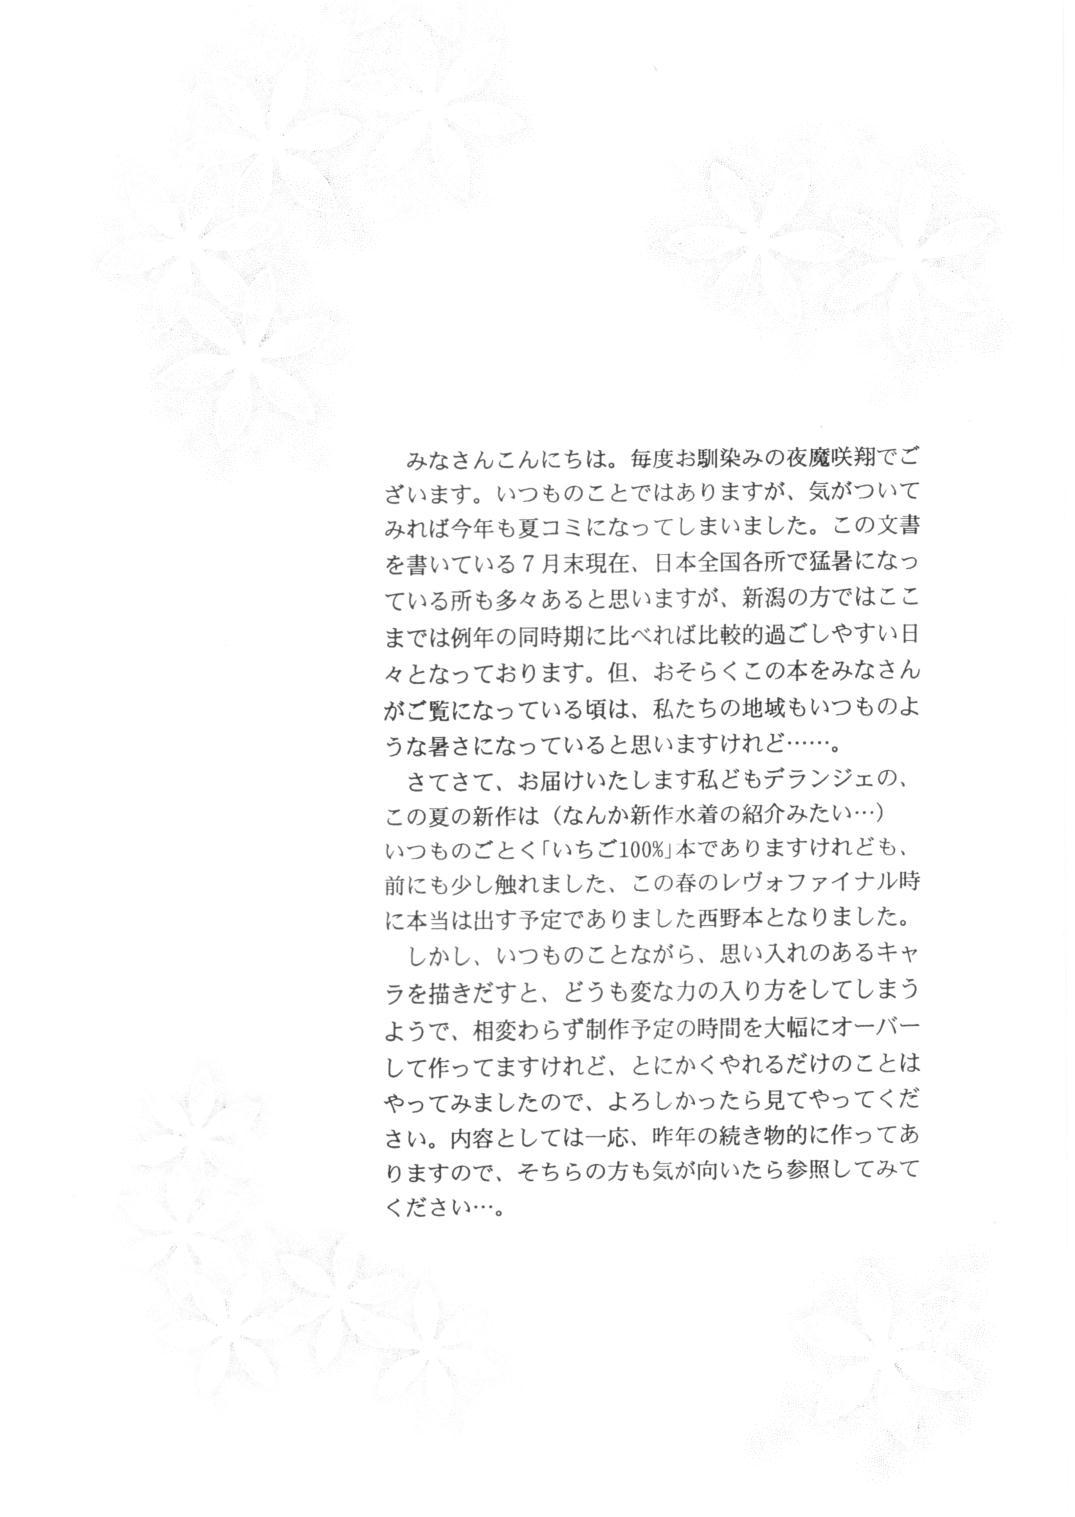 Lolicon ICHIGO ∞% -2 SECOND RELATION - Ichigo 100 Free Rough Porn - Page 3